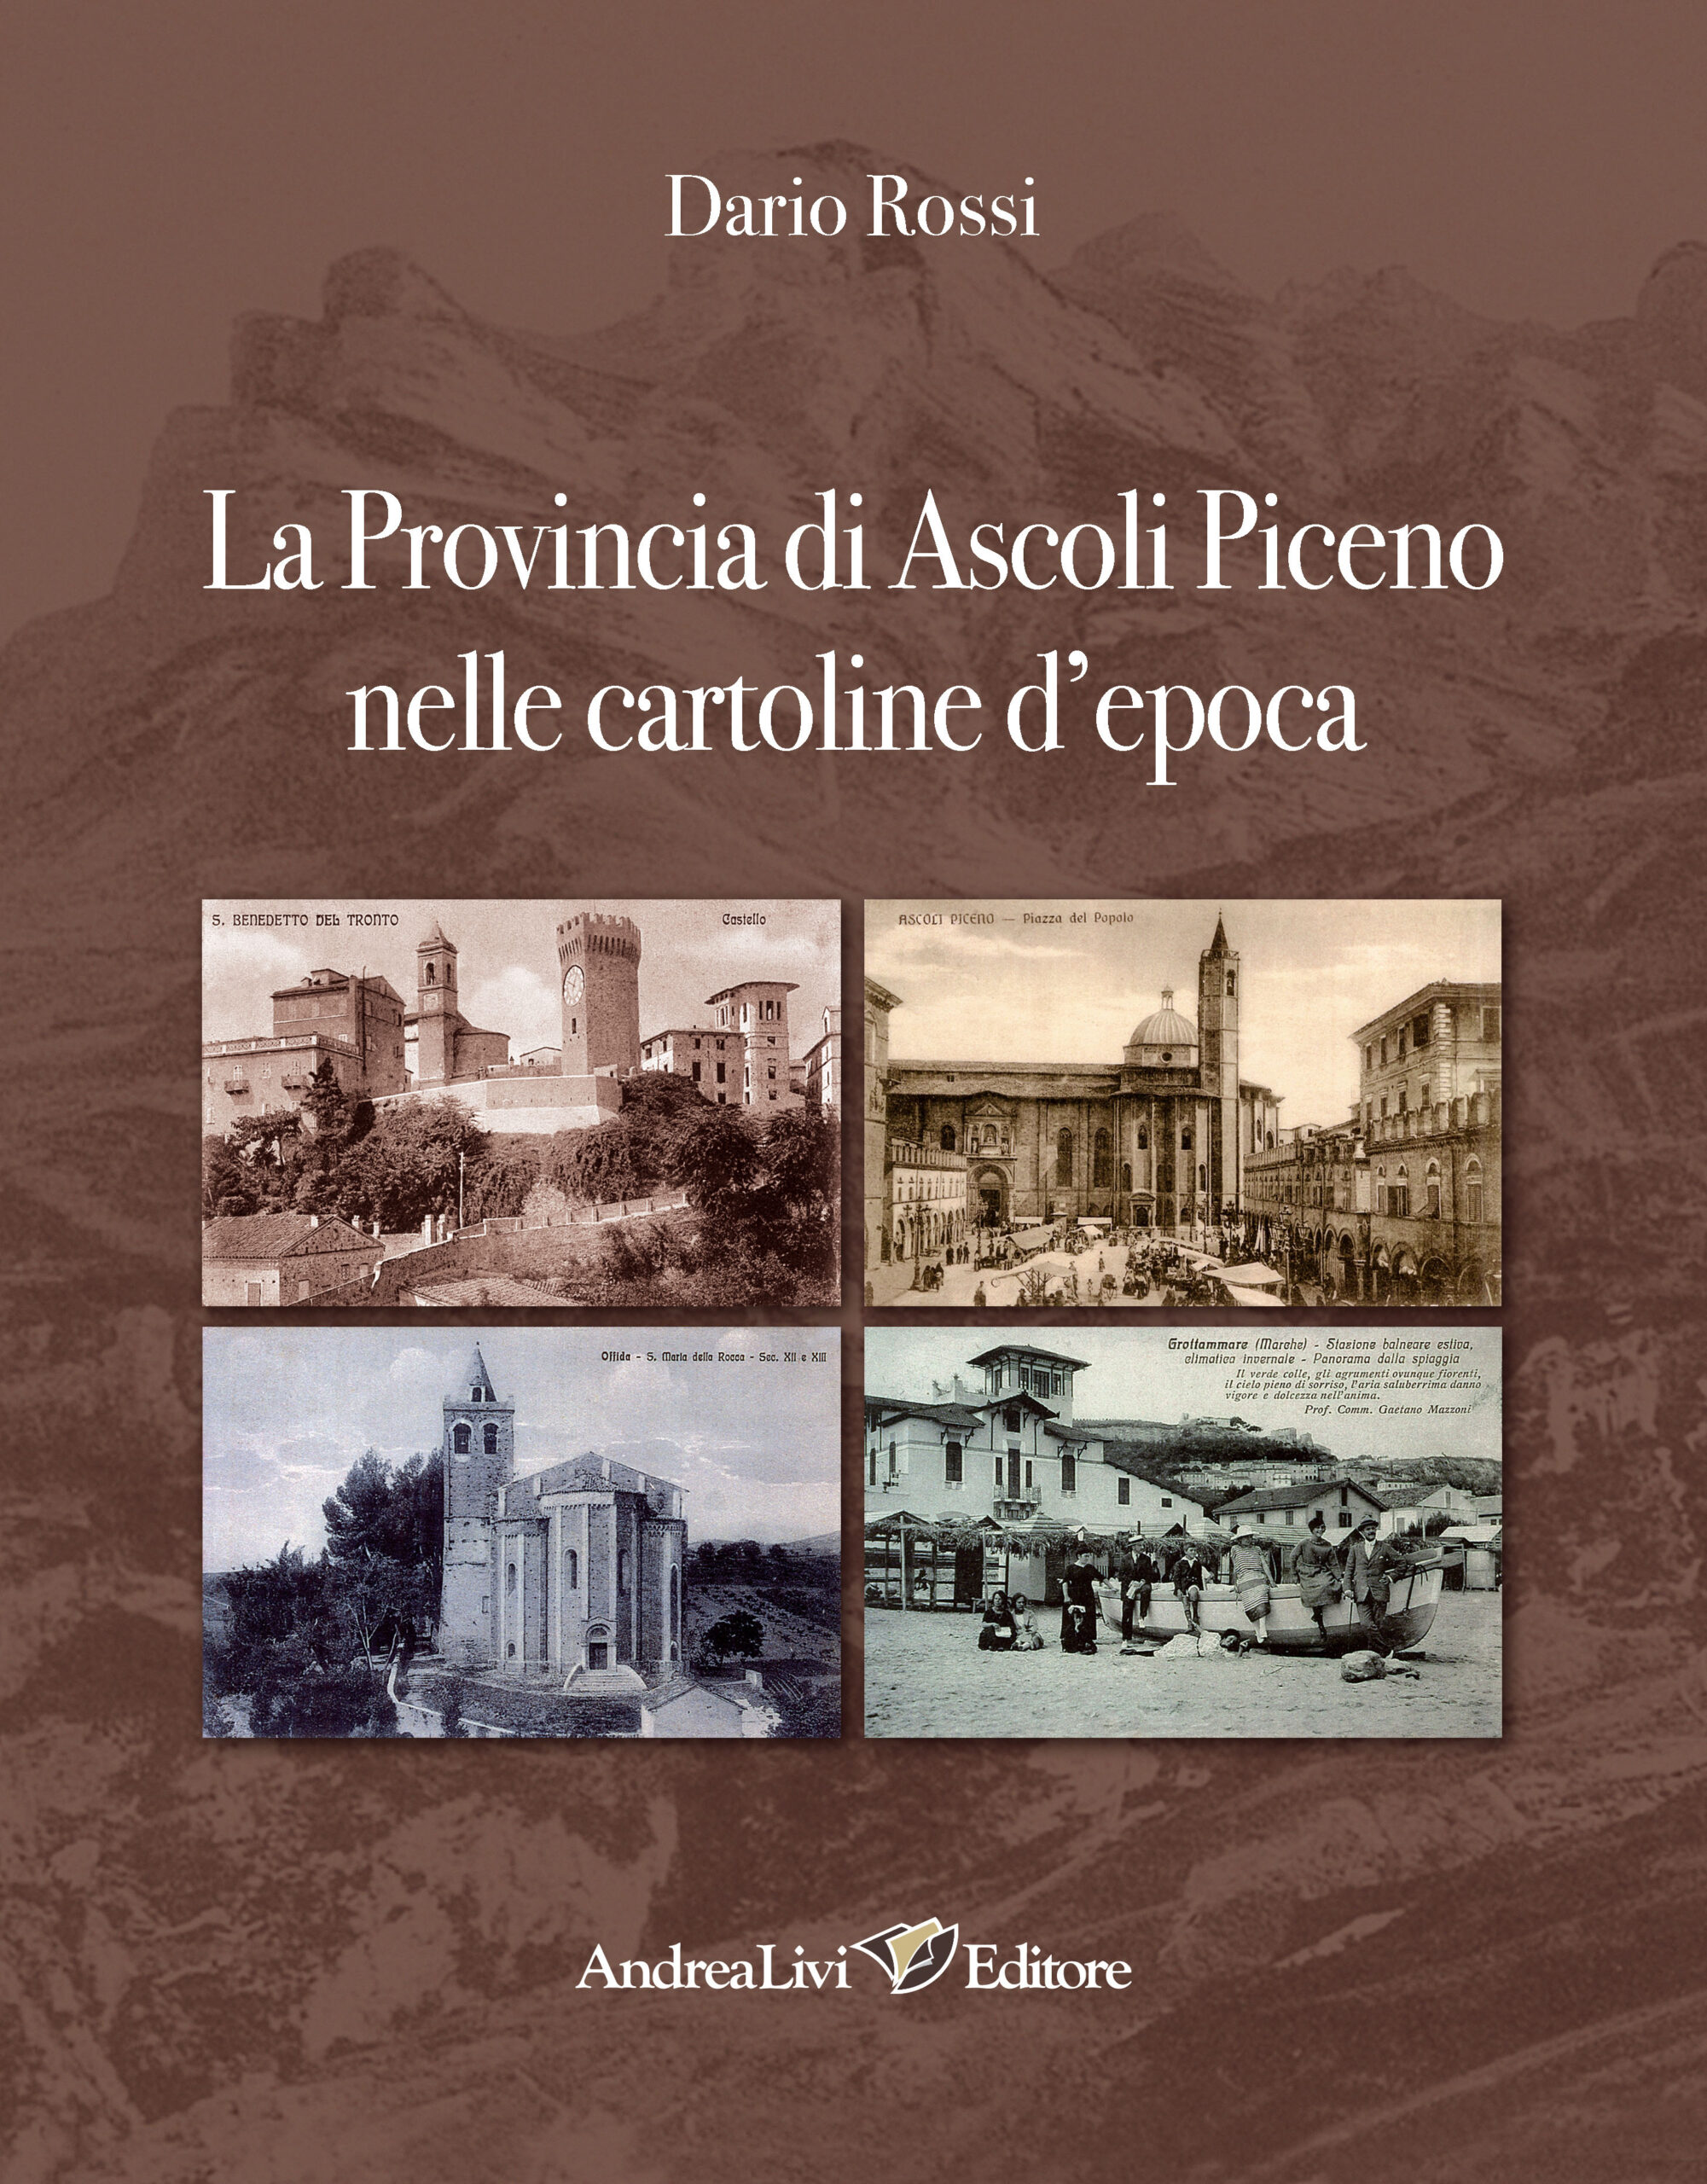 La Provincia di Ascoli Piceno nelle cartoline d’epoca